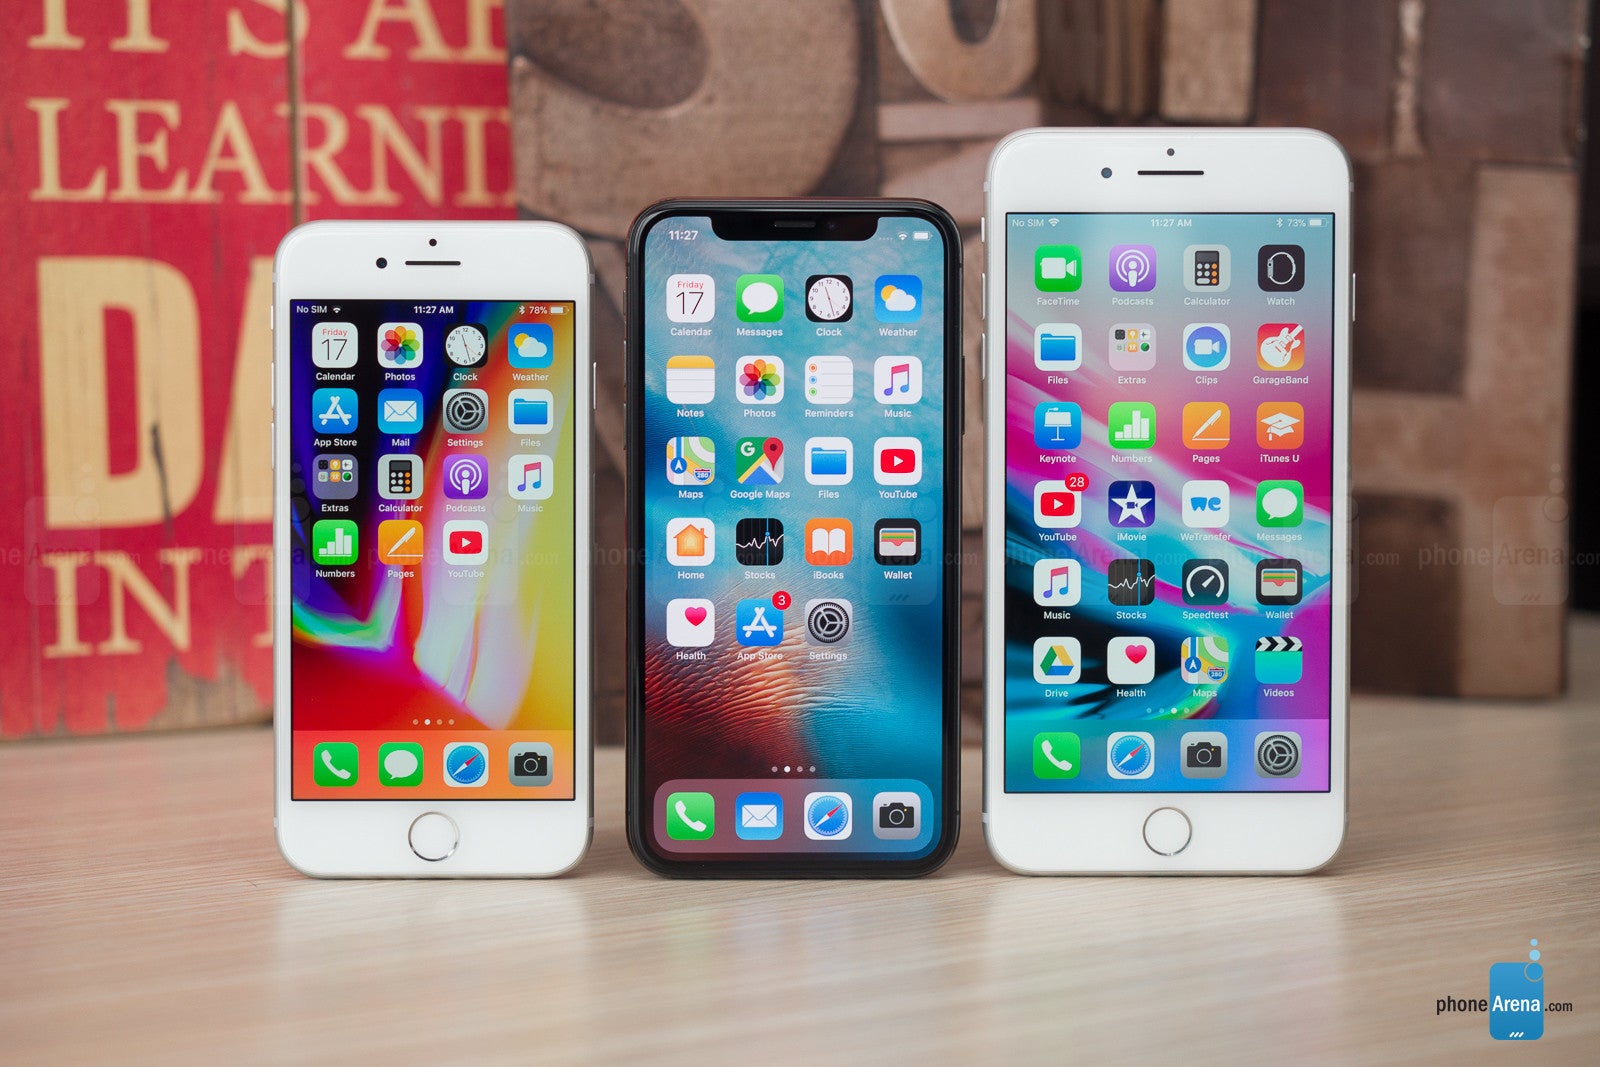 Apple iPhone X vs iPhone 8 vs iPhone 8 Plus